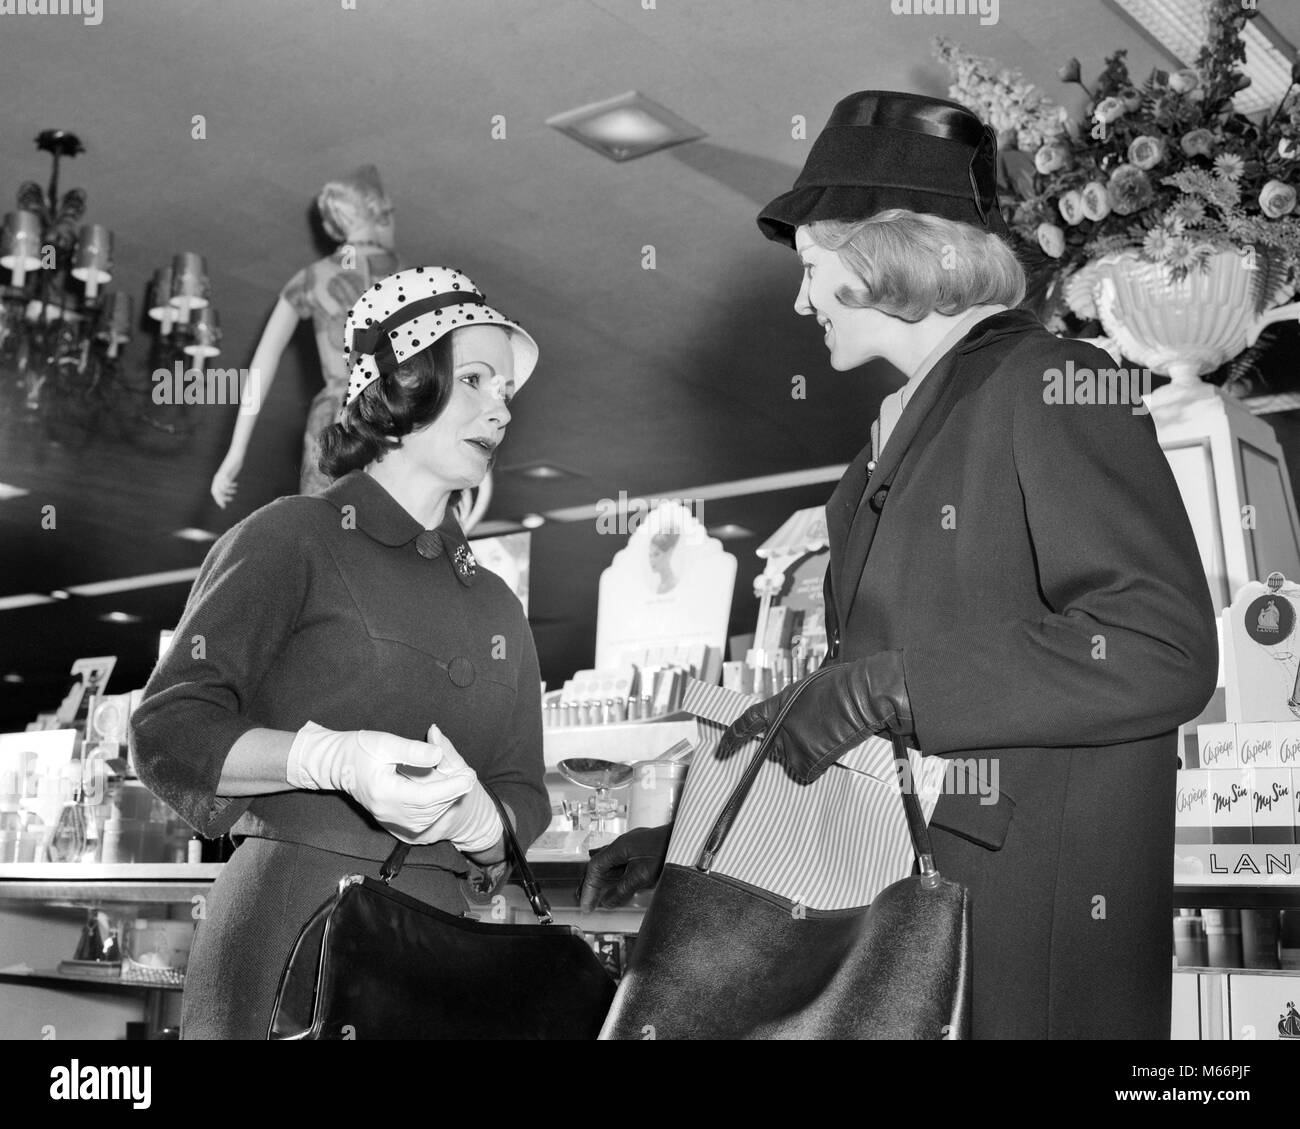 1960 Deux femmes portant des chapeaux en parlant de réunion DEBOUT EN FACE DE COMPTOIR COSMÉTIQUE DE STORE - s14038 HAR001 HARS 25-30 ans 30-35 ans ENSEMBLE STYLES SHOPPERS LOW ANGLE ESTHÉTIQUE MODE CONNEXION GANTS BLANCS MID-ADULT WOMAN FEMME B&W NOIR ET BLANC PORTRAIT DE L'ORIGINE ETHNIQUE DES PERSONNES À L'ANCIENNE DES GANTS EN CUIR Banque D'Images